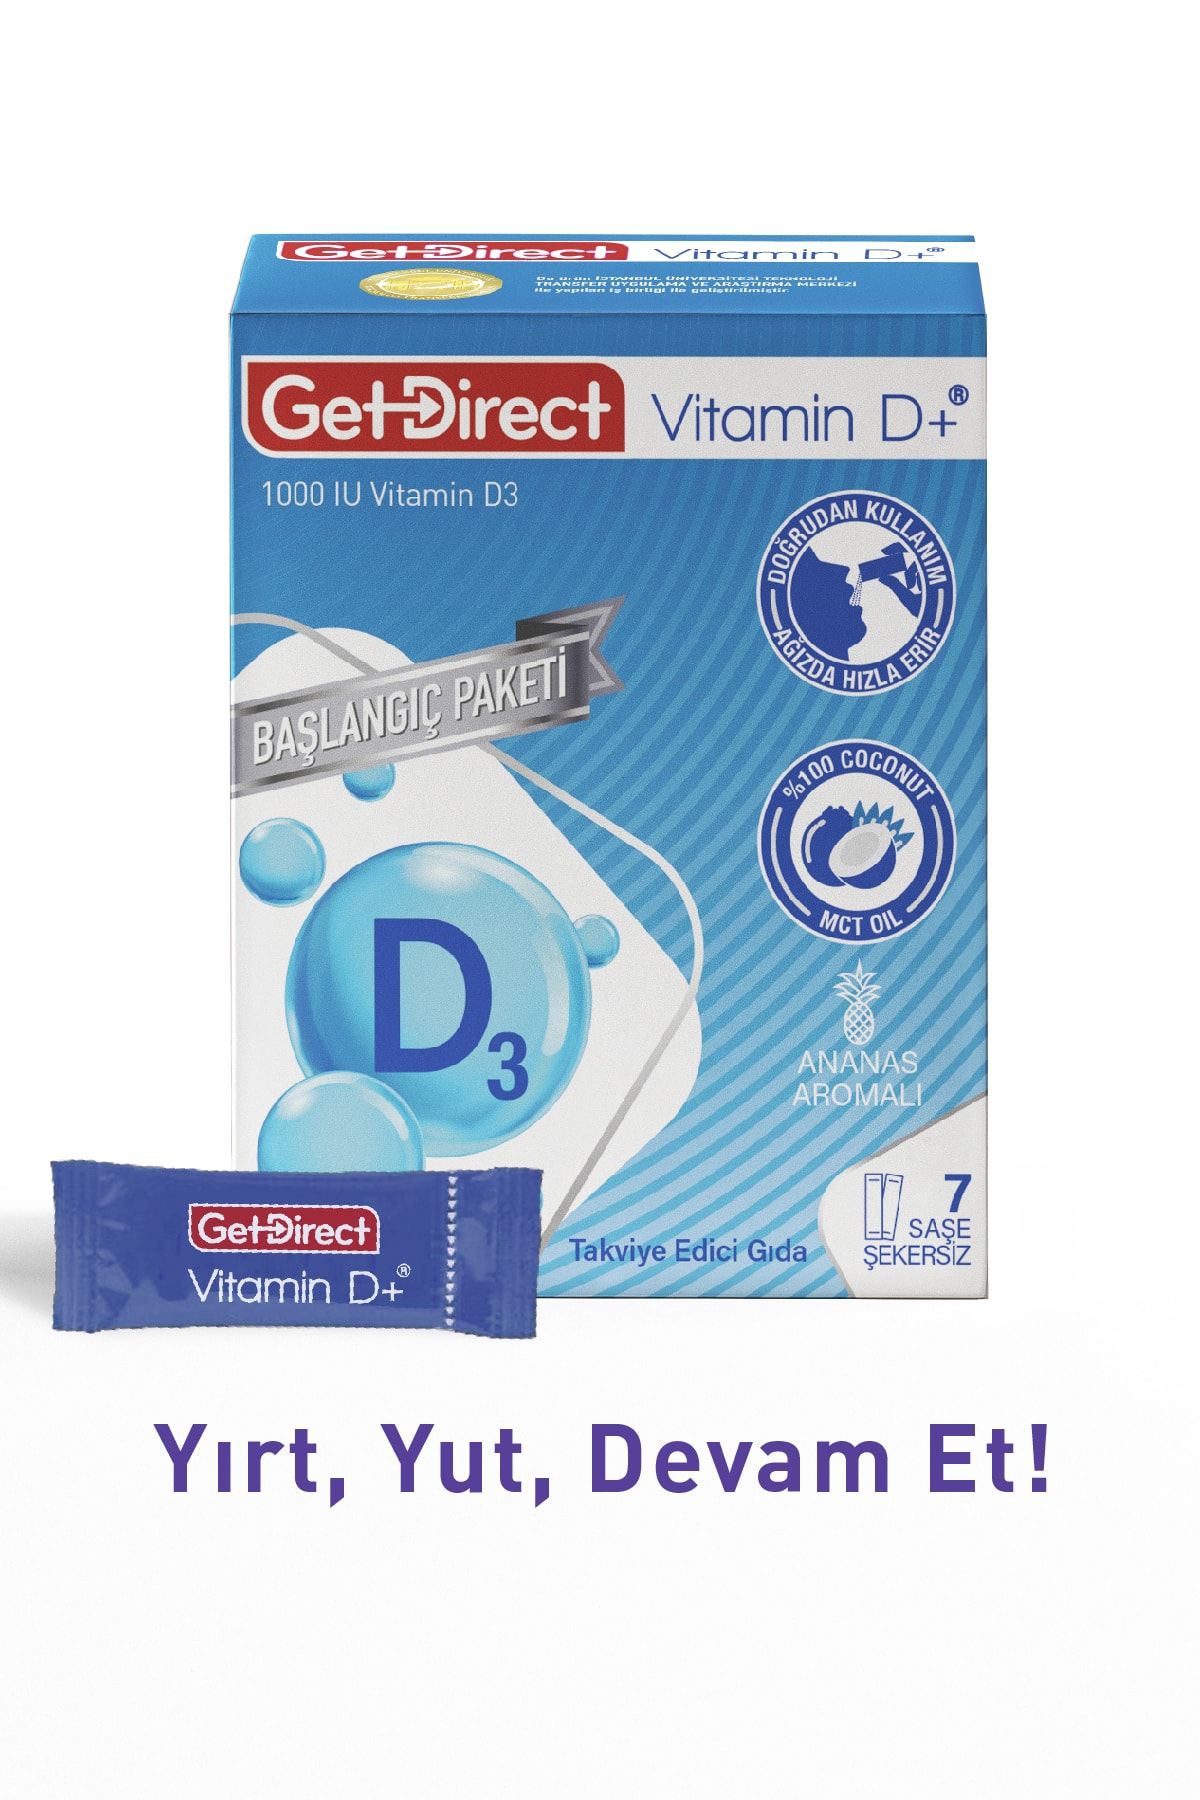 GetDirect Vitamin D+ Başlangıç Paketi 1000 Iu Vitamin D3 Içeren Takviye Edici Gıda 7 Saşe